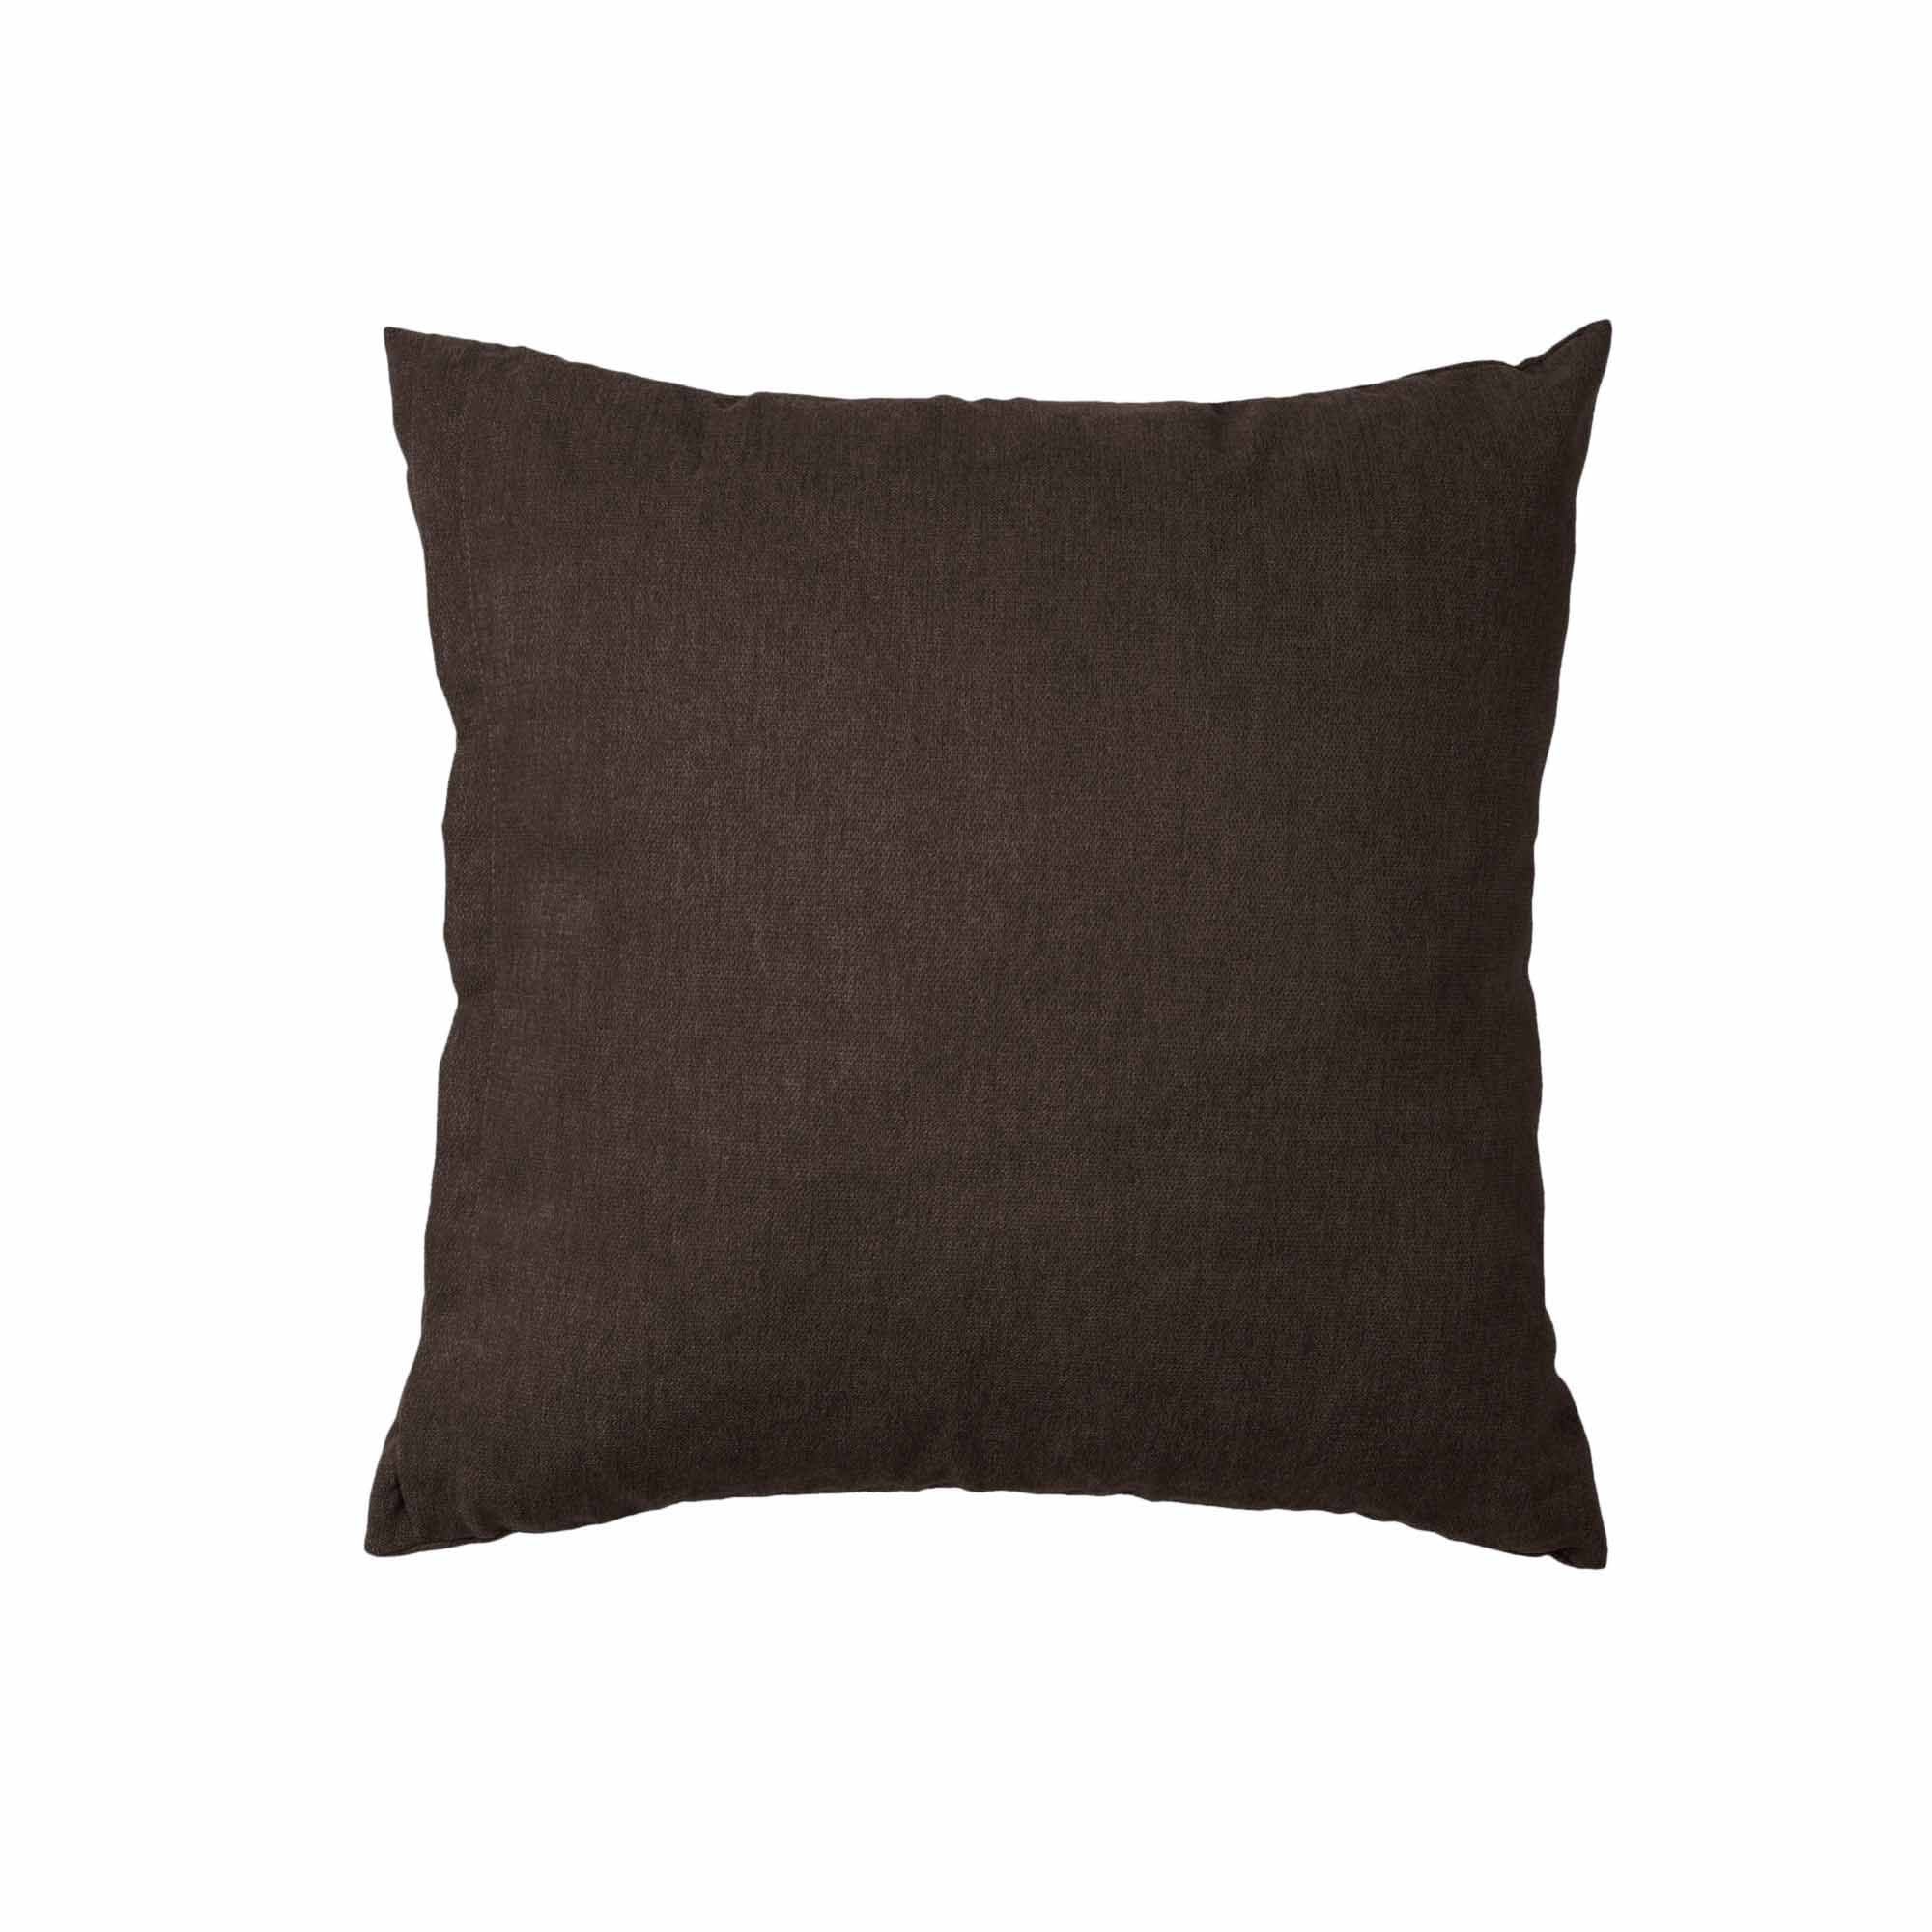 KISSEN Indoor Cushion brown fabirc upholstery, front view